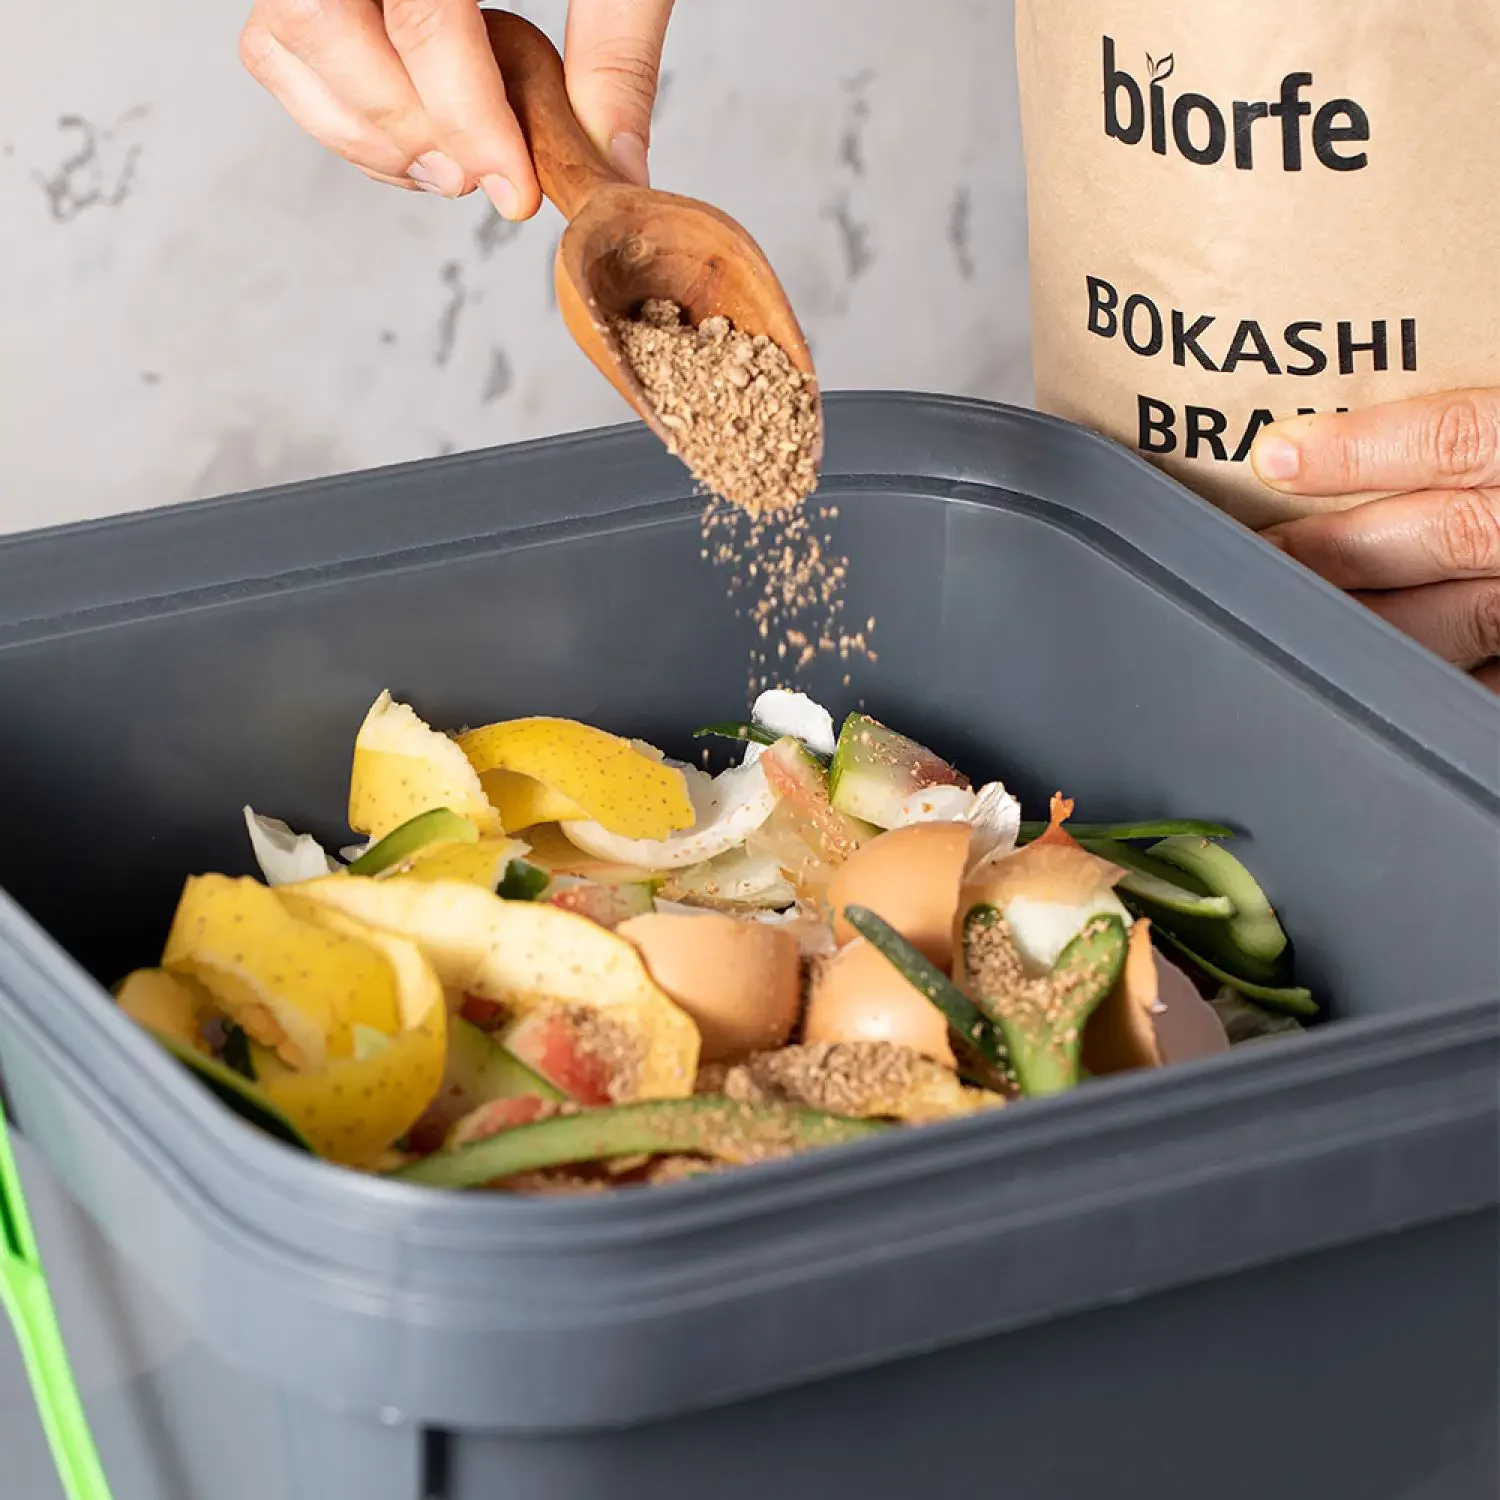 biorfe-bokashi-bran-application